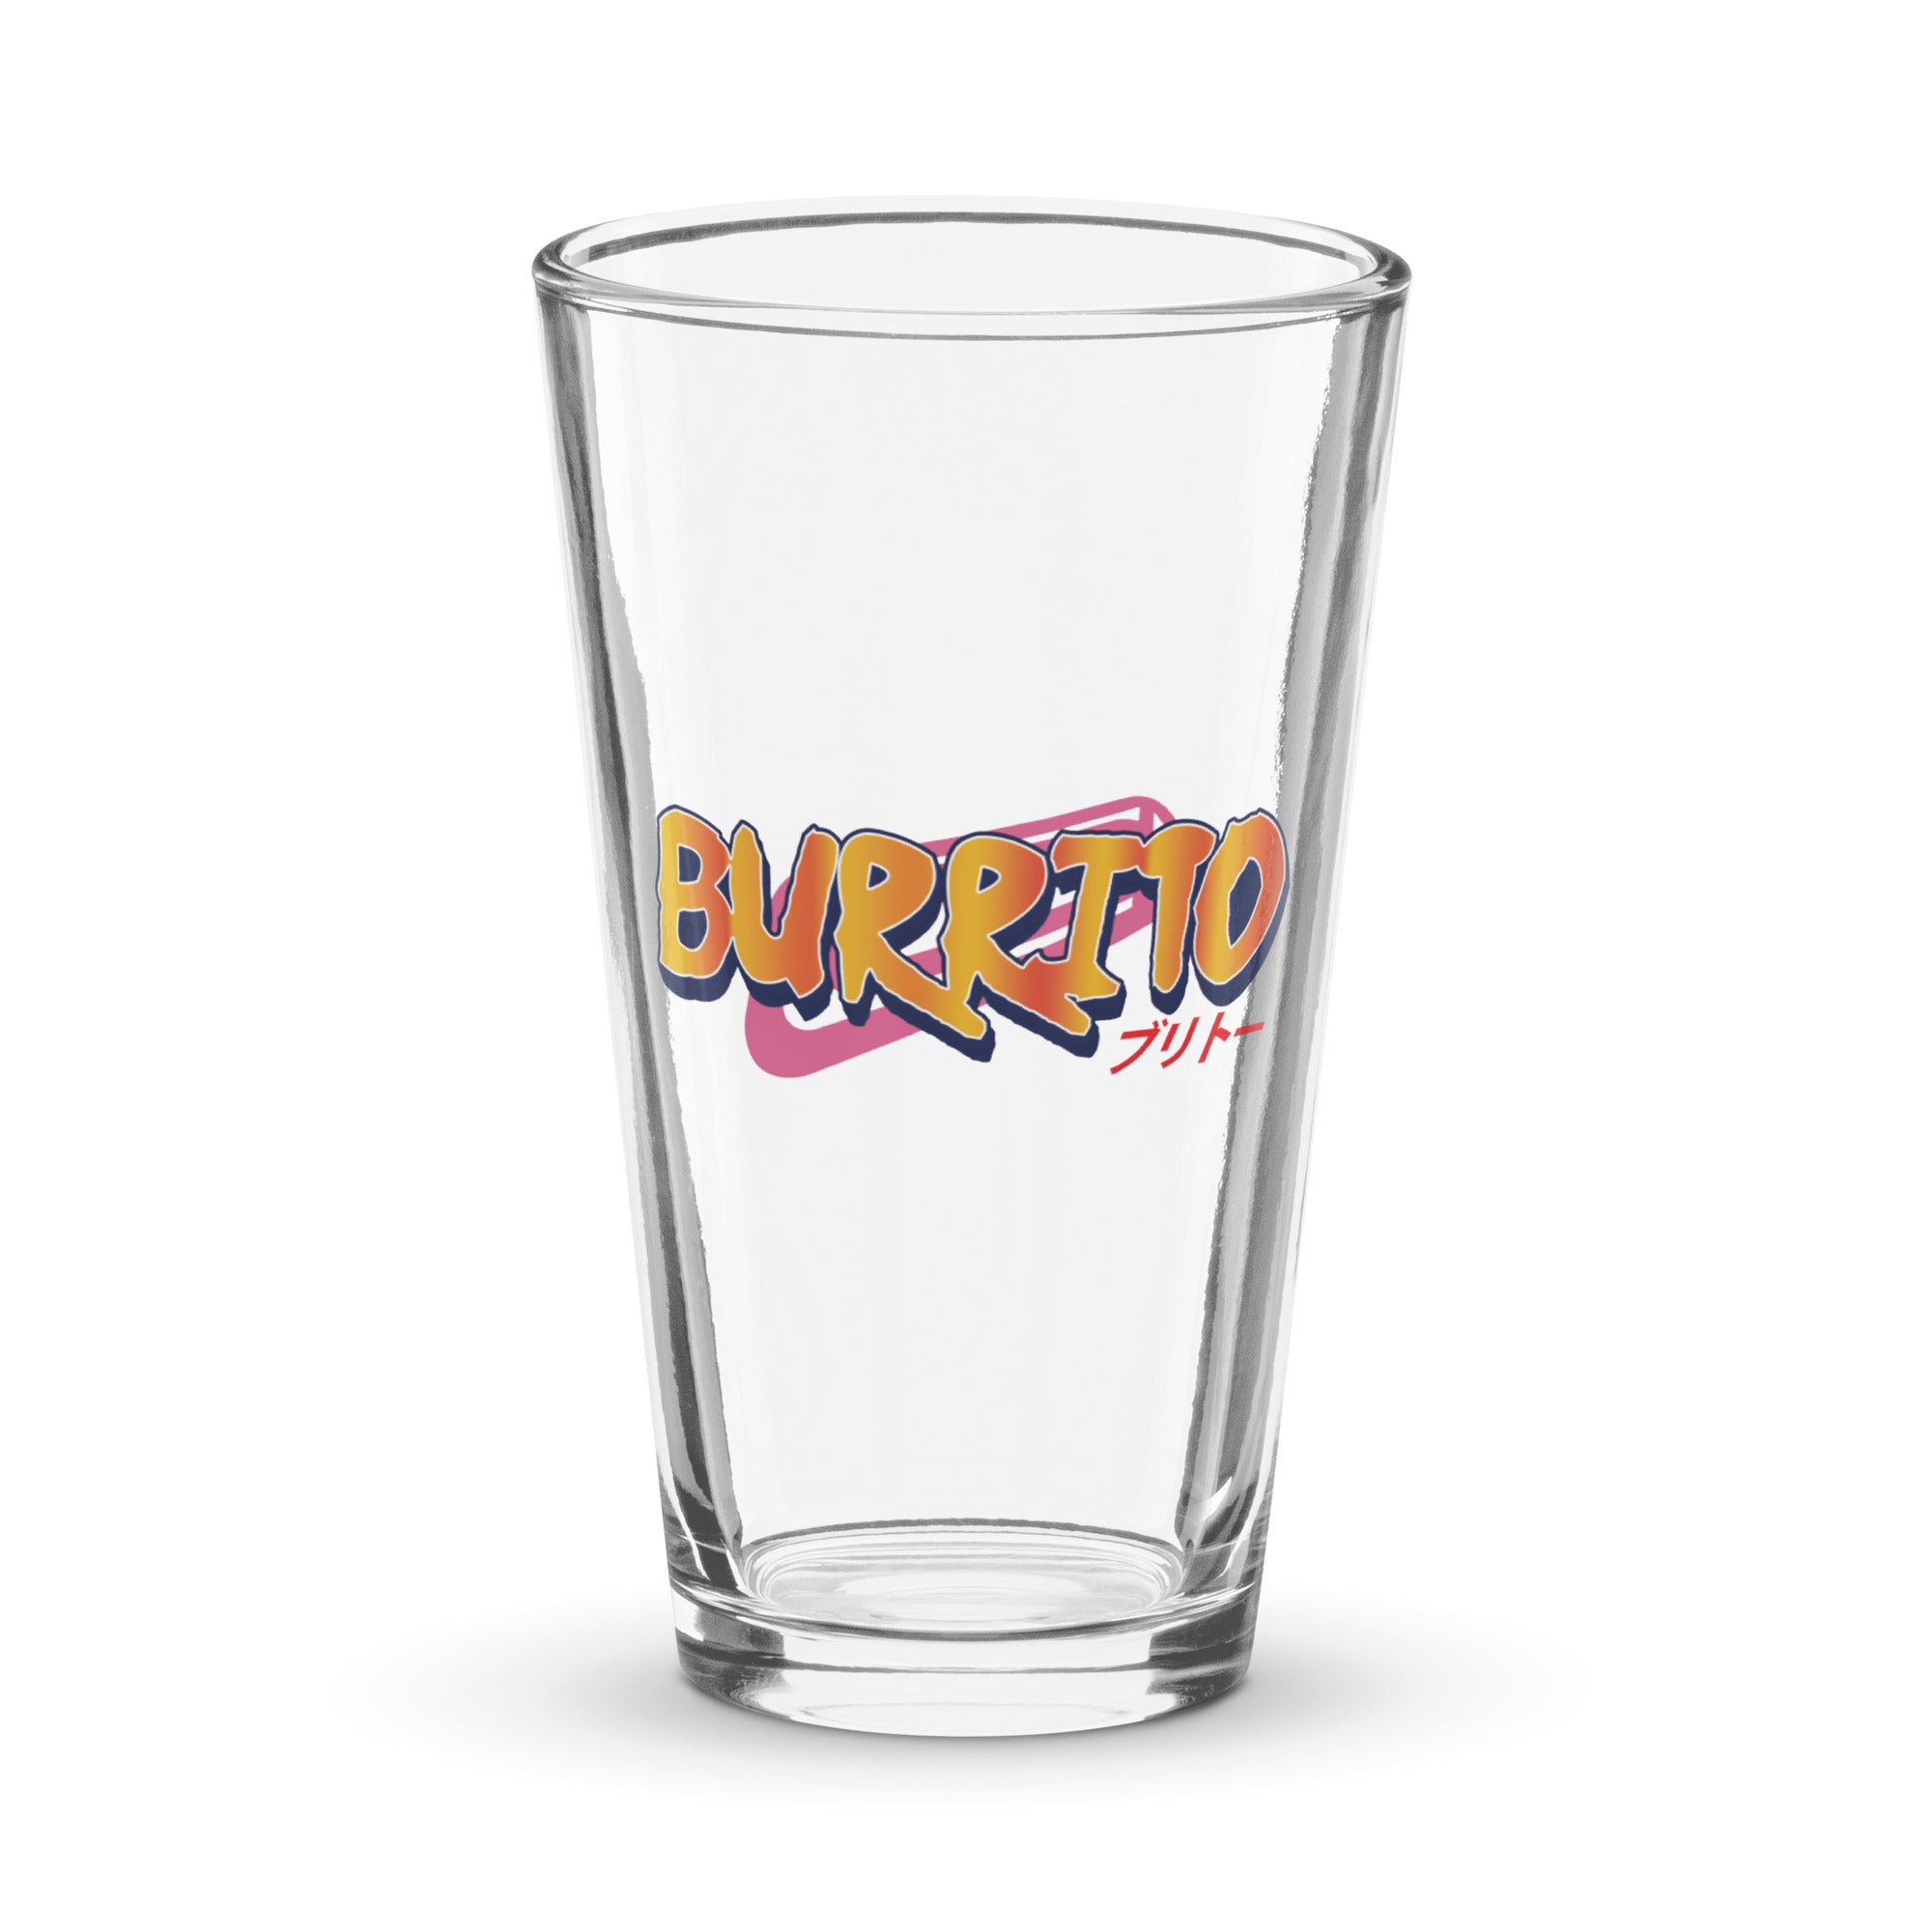 Burrito Shaker pint glass